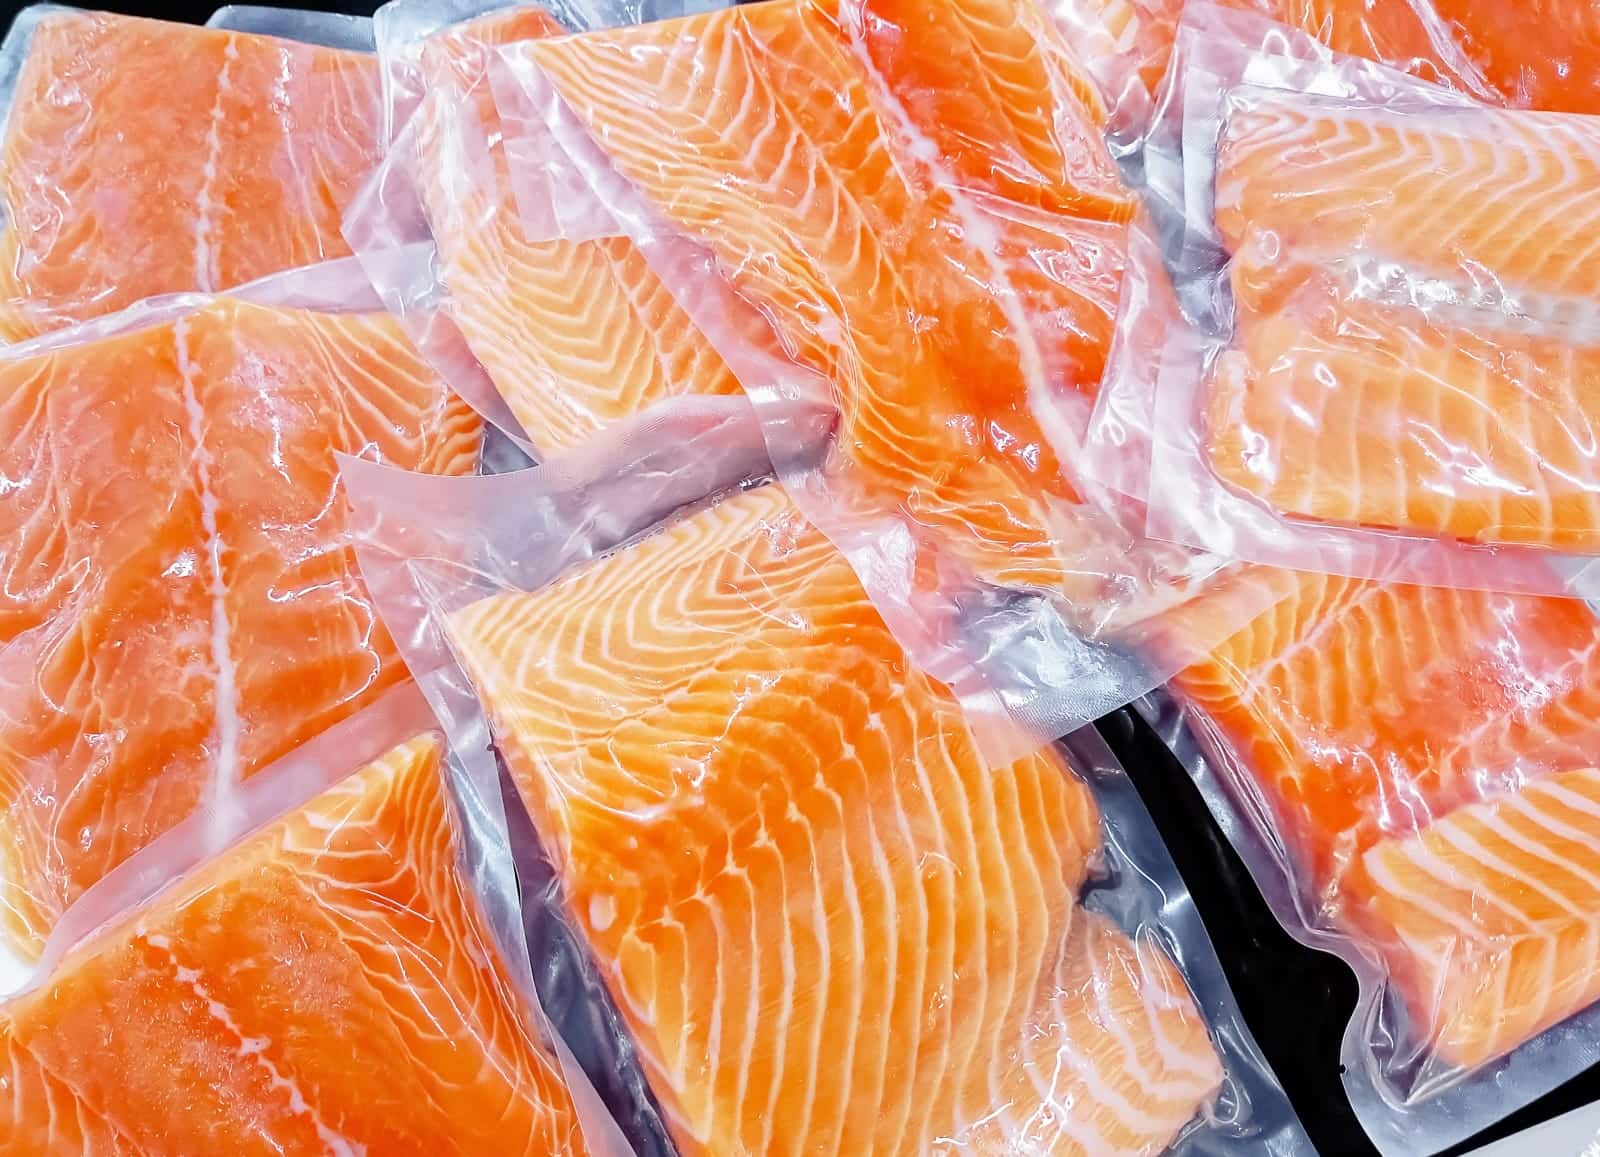 Una porción estándar de pescado es de 200 gramos, empácalas por separado de acuerdo a las porciones que vayas a cocinar. 